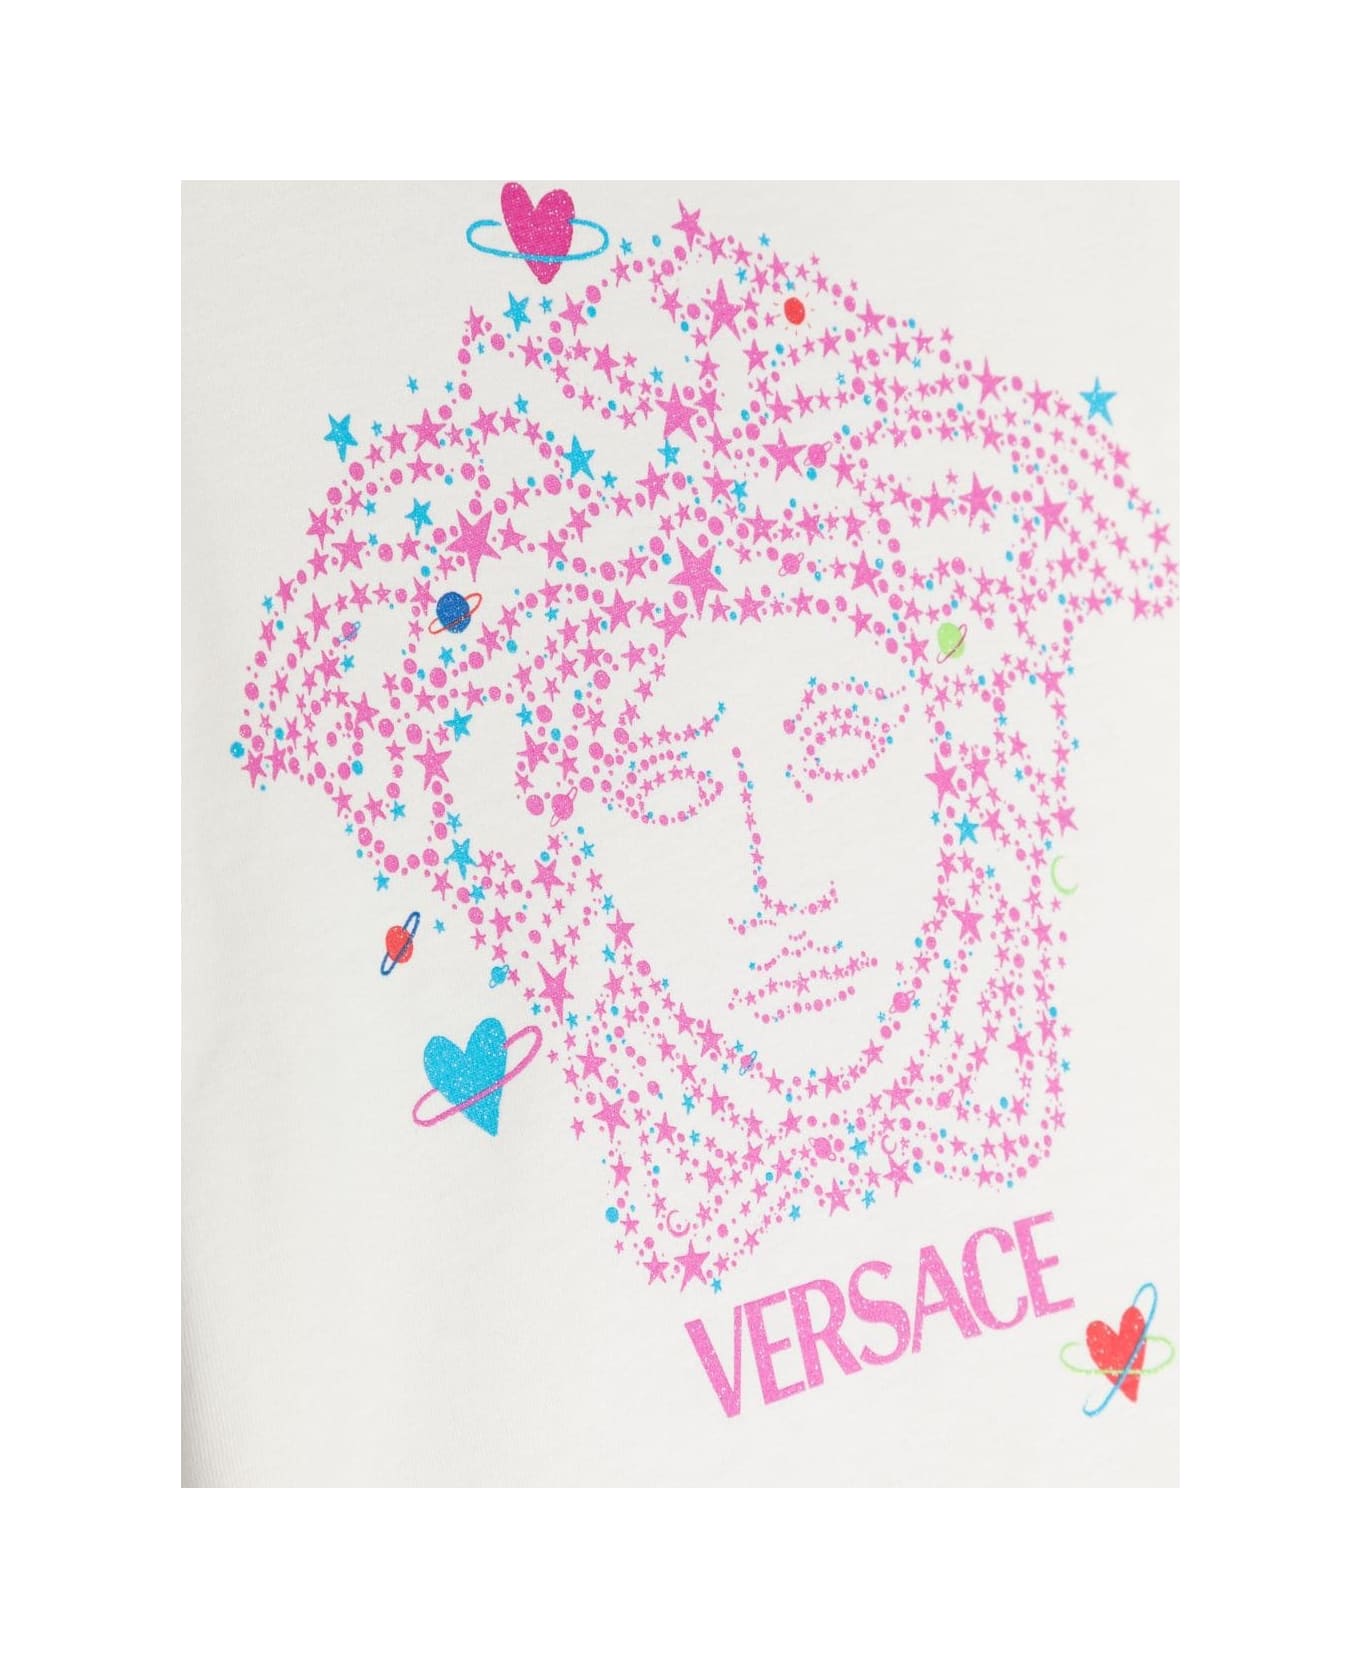 Versace T-shirt Bianca In Jersey Di Cotone Bambina - Bianco